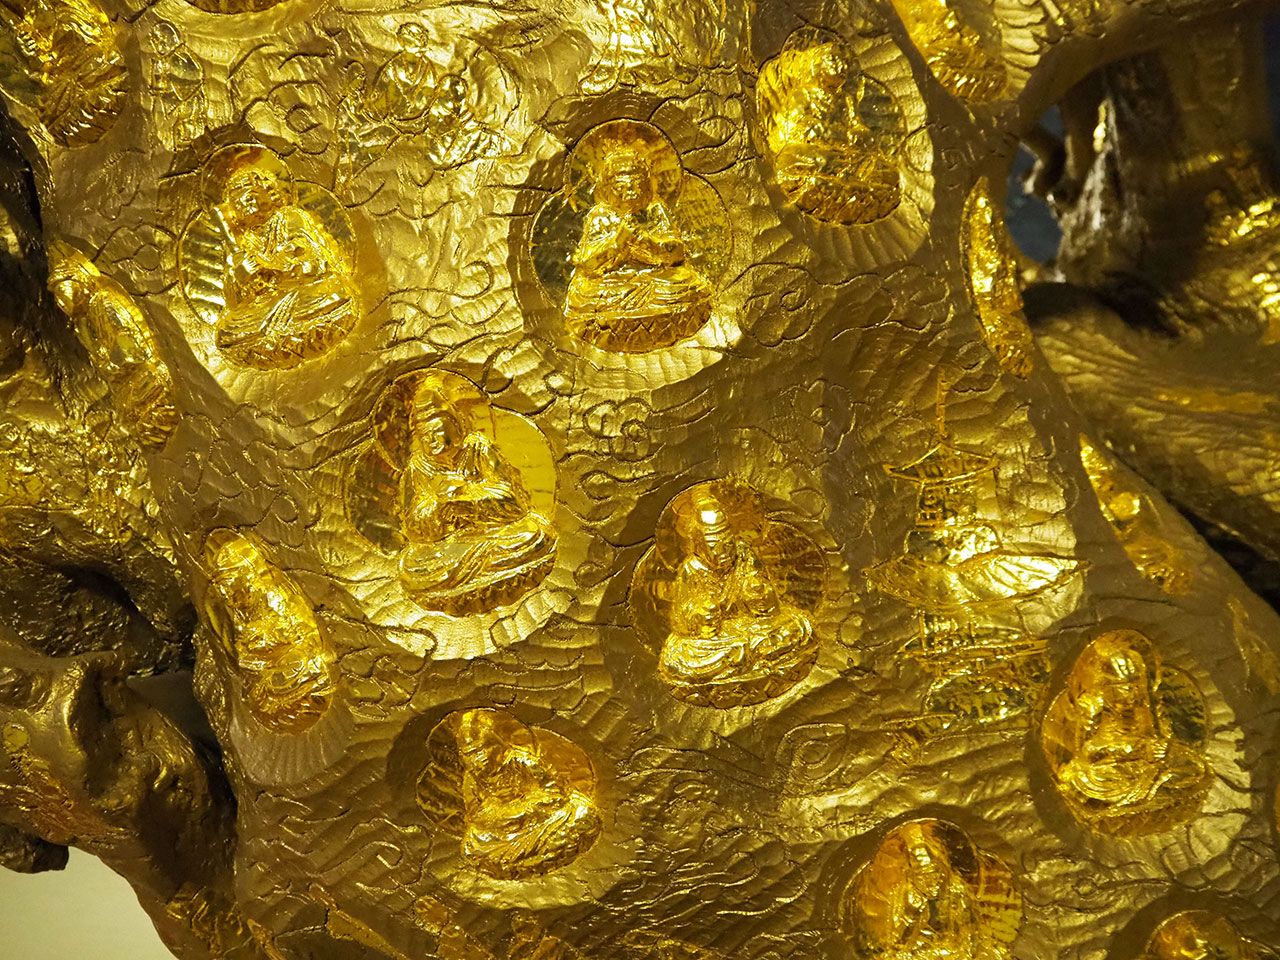 ピラミッド元氣温泉の中央に置かれた黄金のケヤキには、千体の仏像が彫られ、その上に金箔が貼られている。